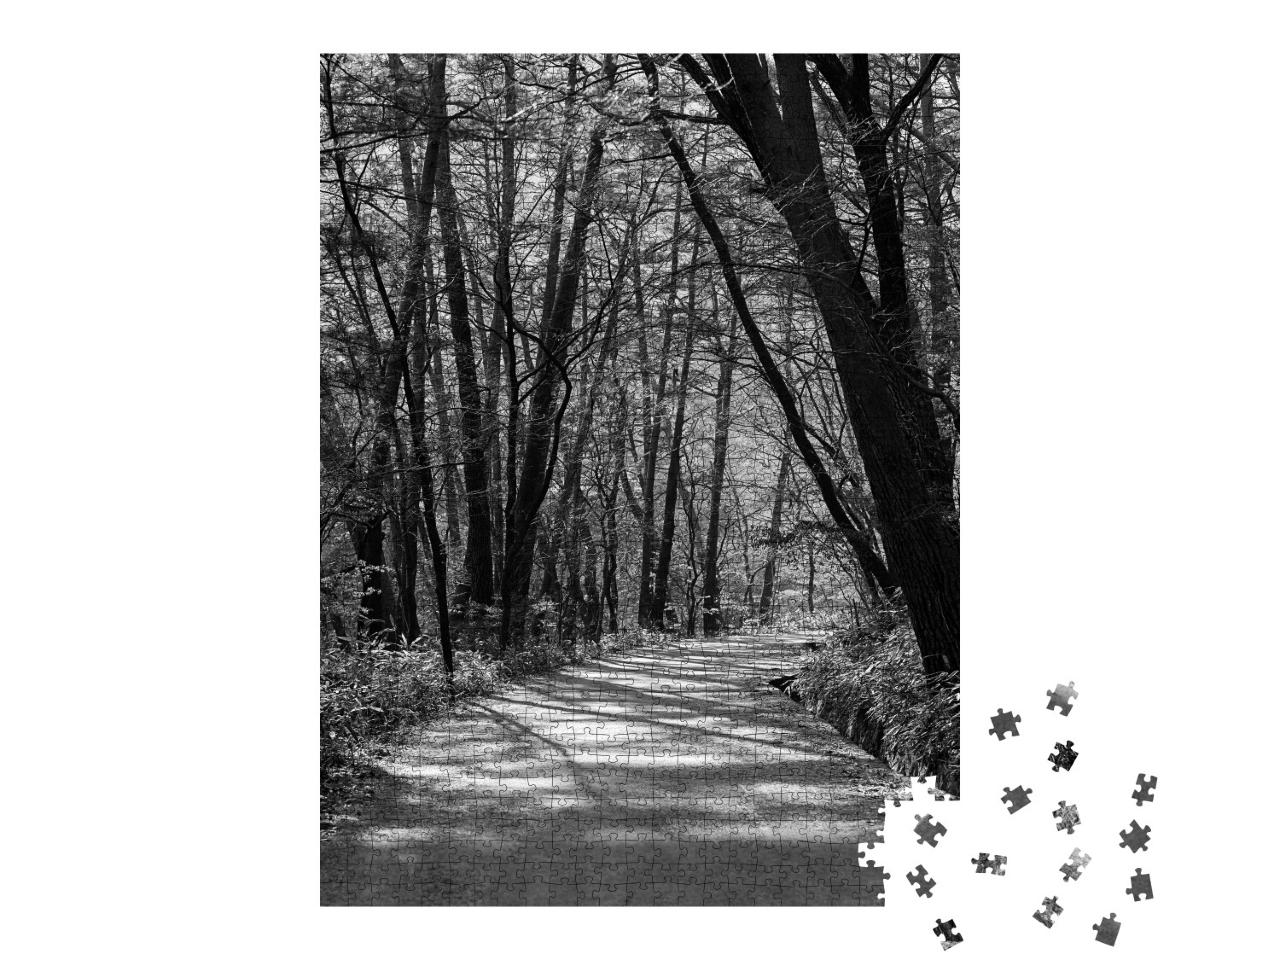 Puzzle 1000 Teile „Wunderschöner Weg im Wald, schwarz-weiß“